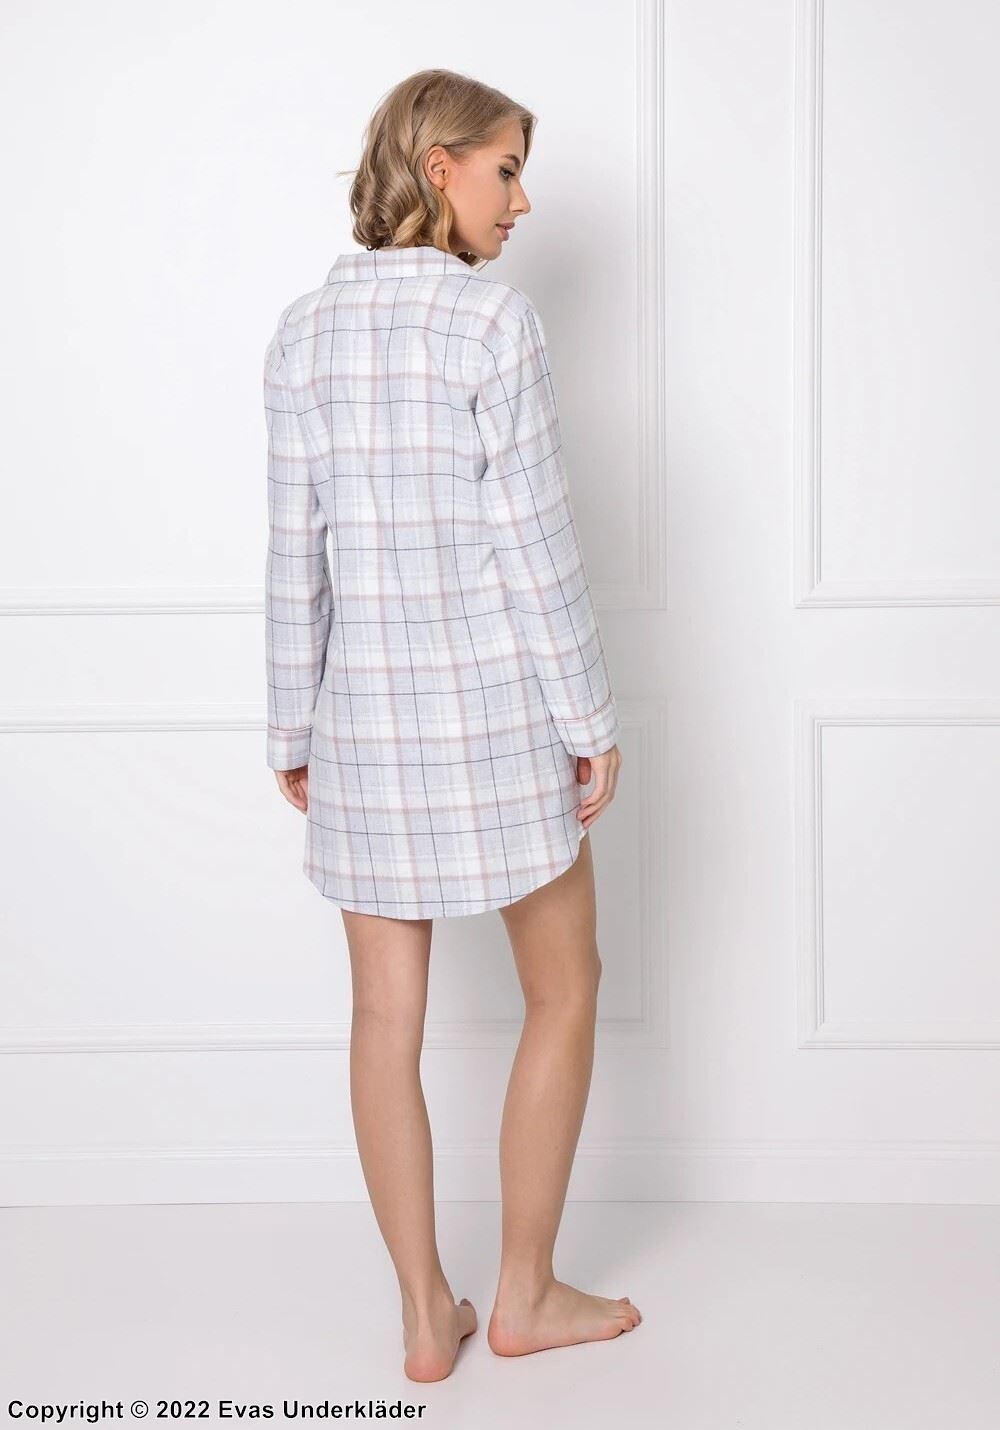 Pajamas dress, long sleeves, pocket, checkered pattern